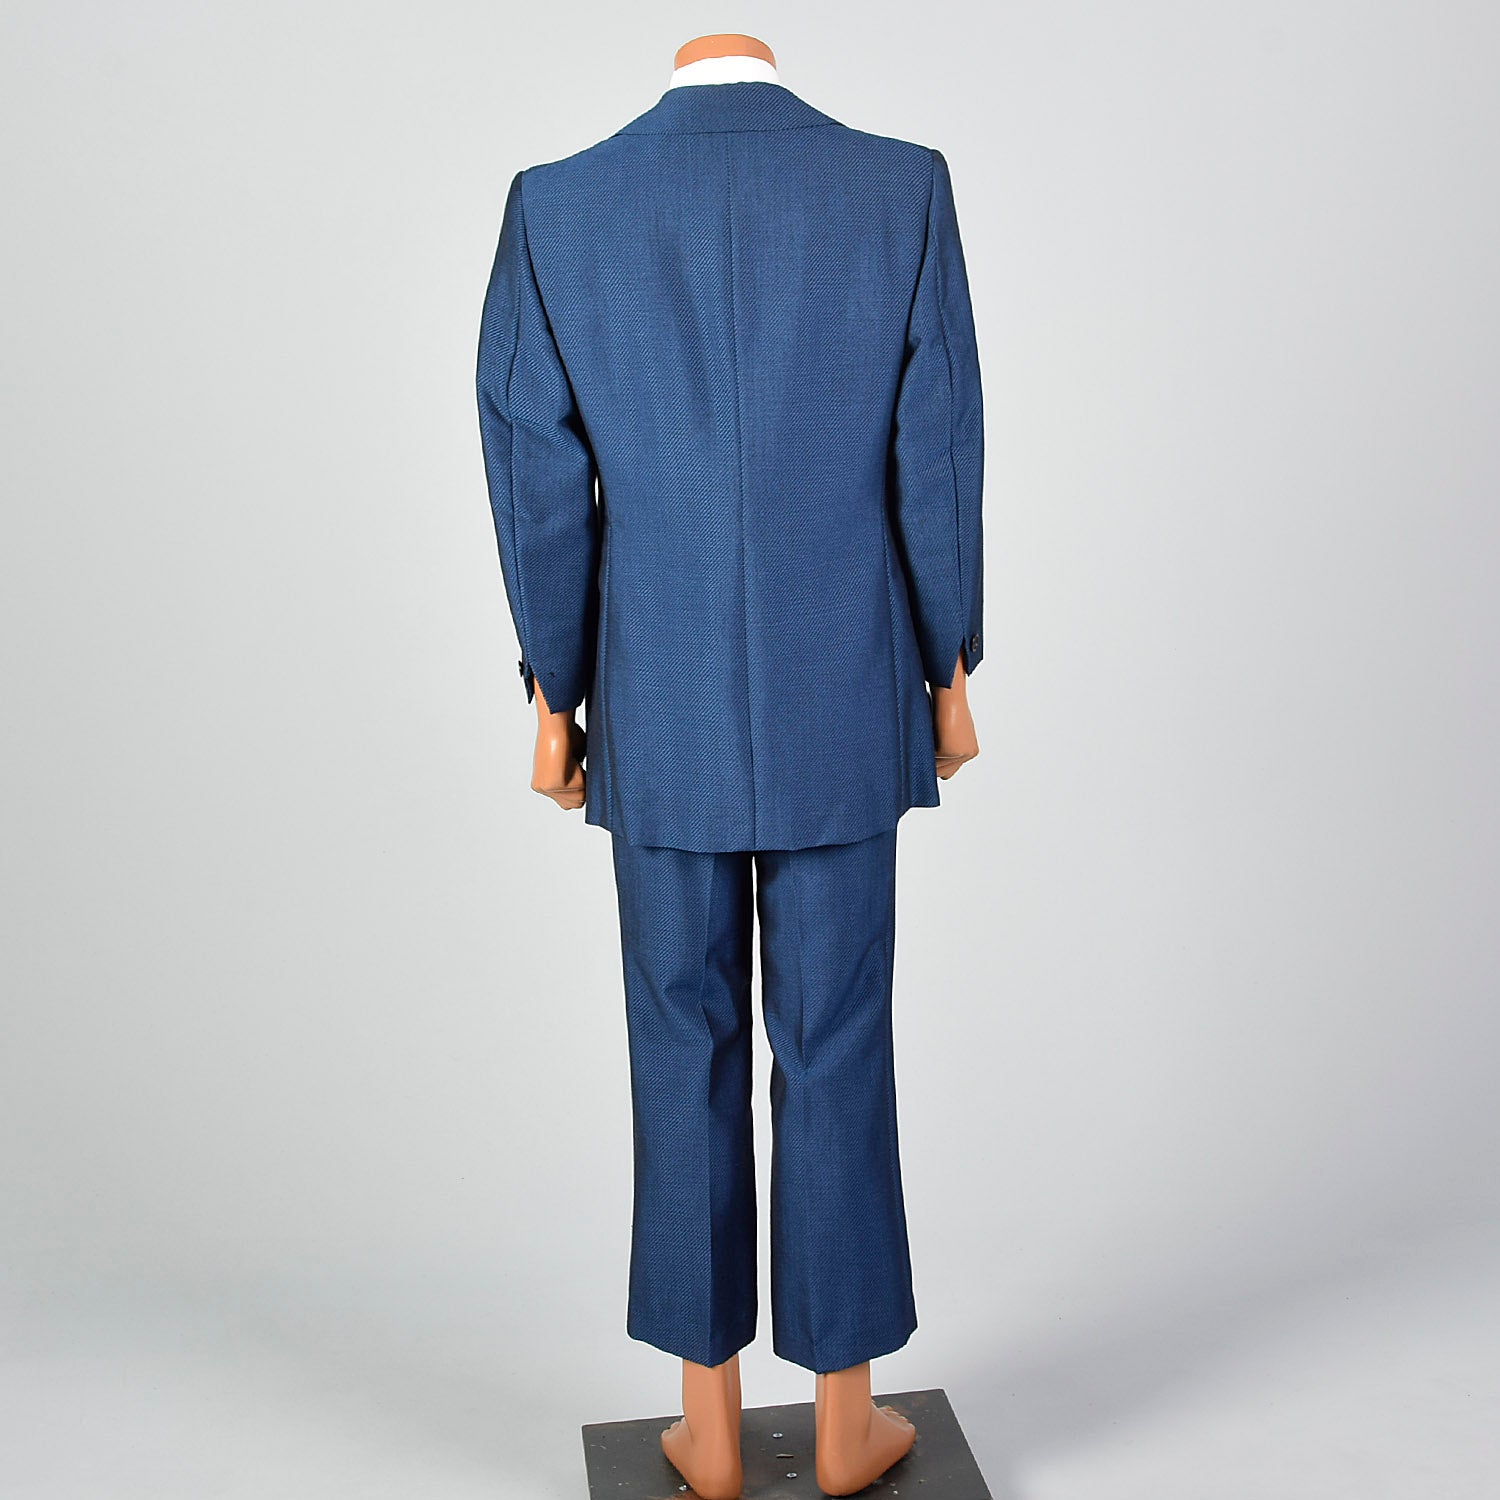 42L 1960s Mens Blue Diagonal Stripe Suit